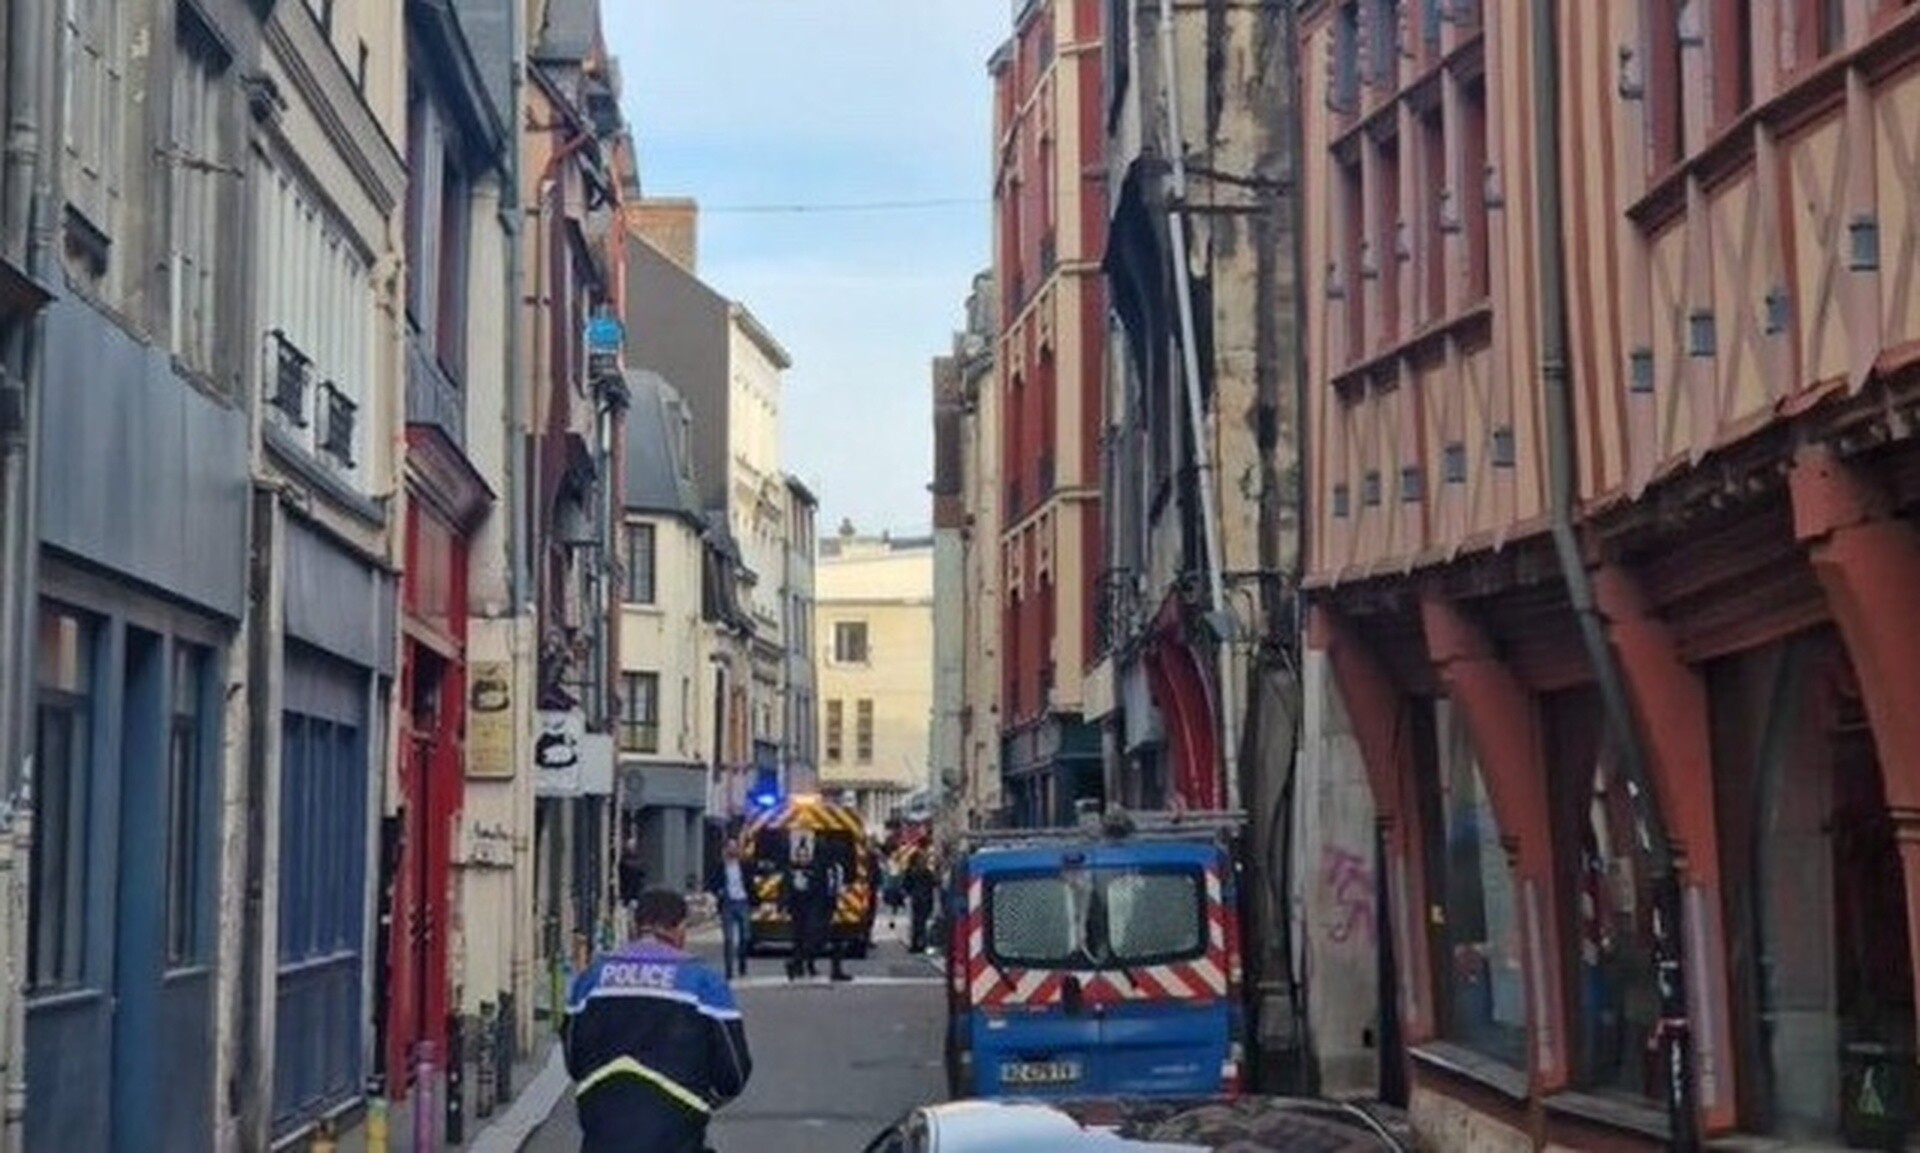 Γαλλία: Ανδρας απειλούσε να βάλει φωτιά σε συναγωγή - Έπεσε νεκρός από τα πυρά αστυνομικών